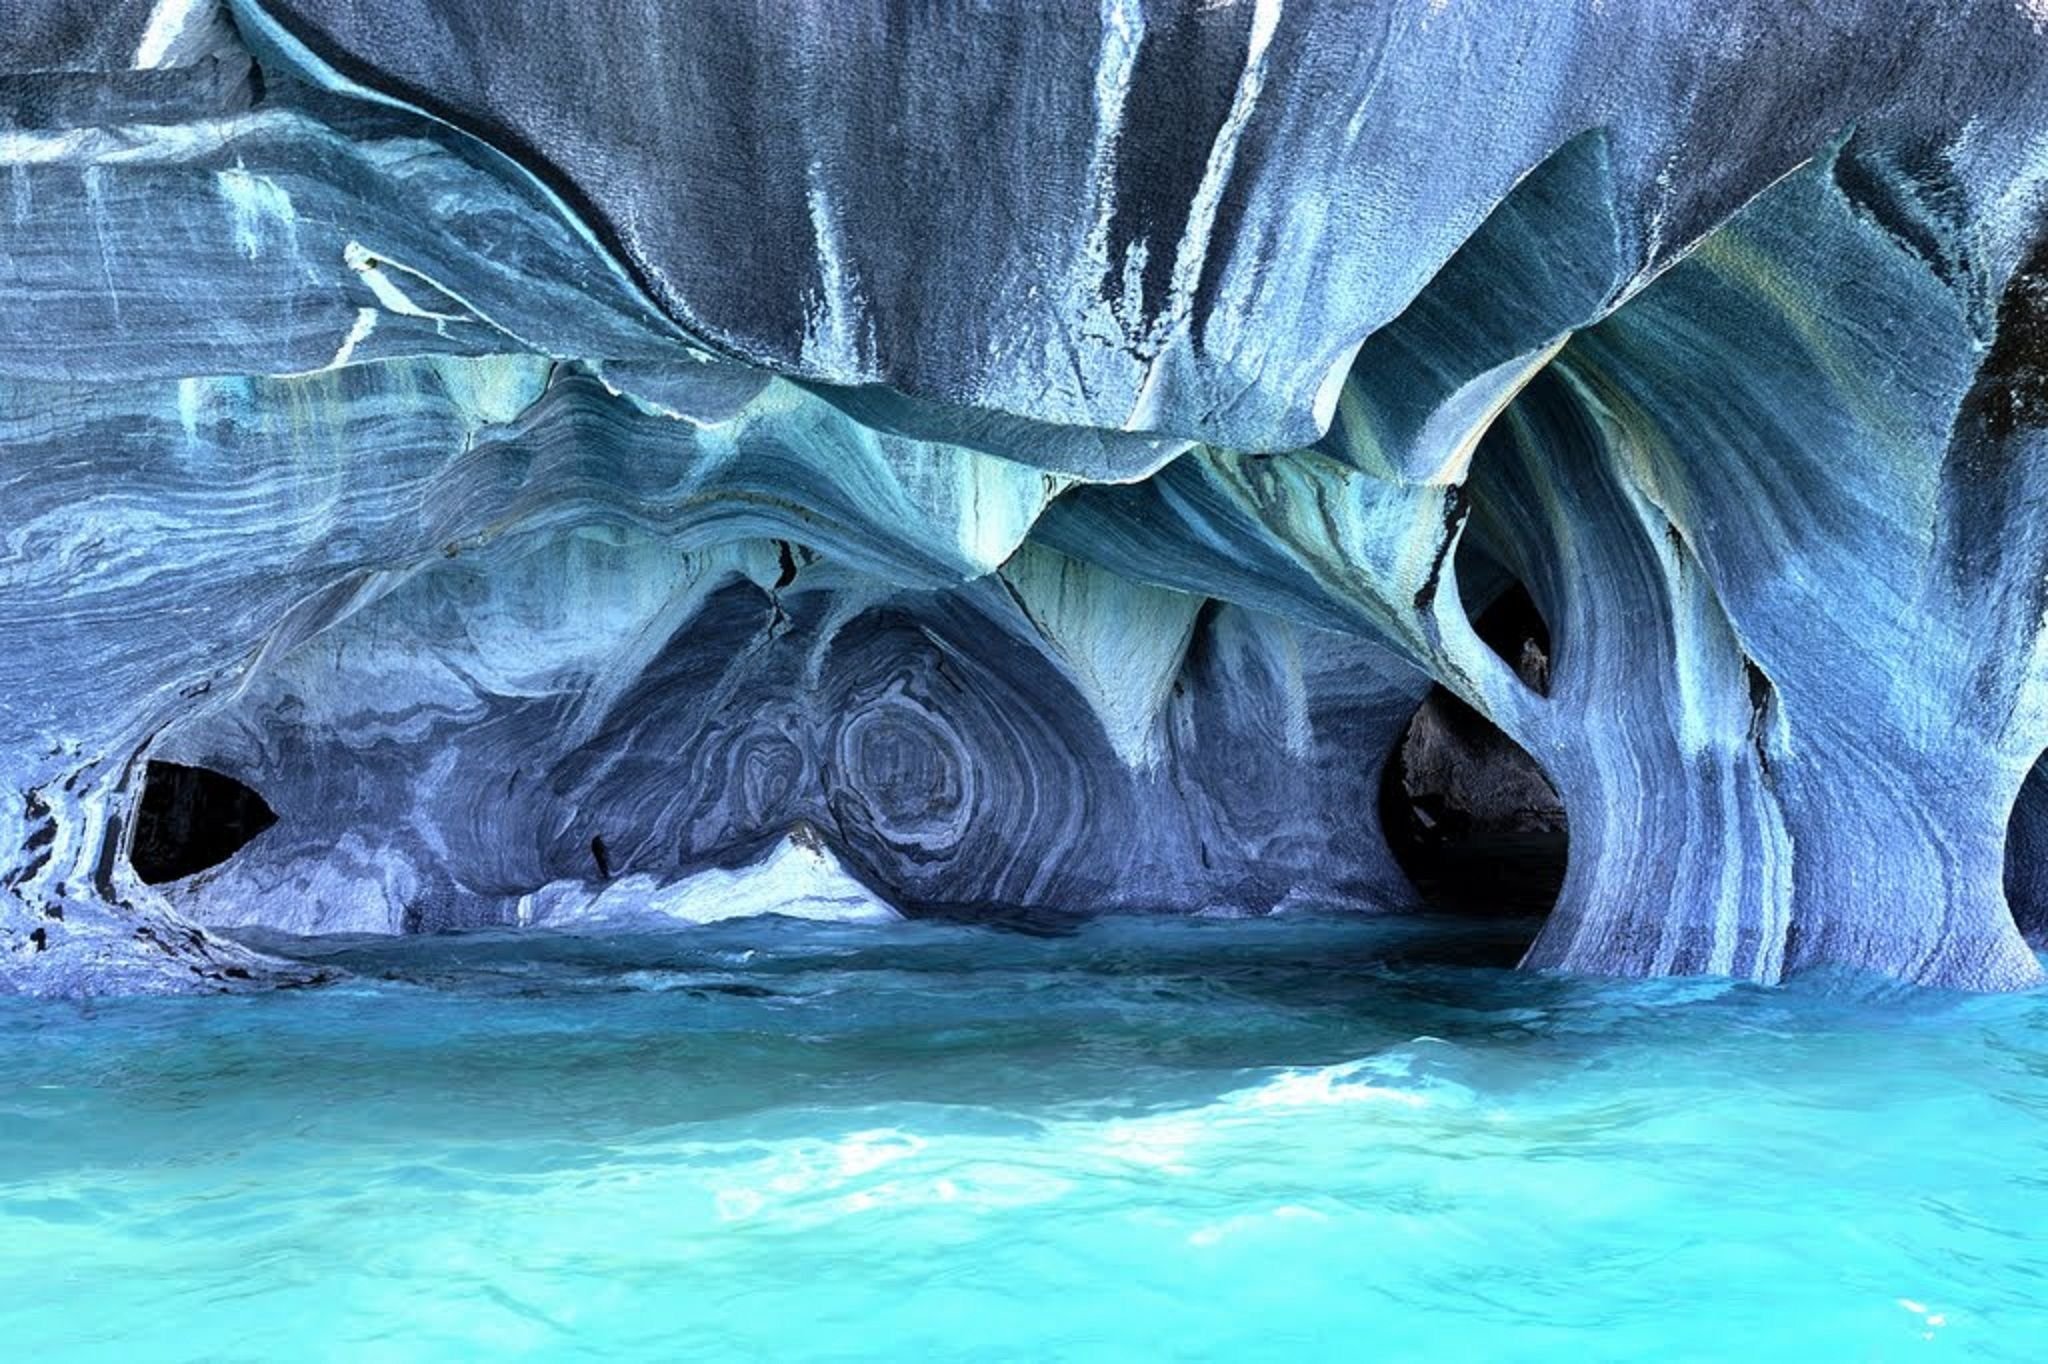 Самые красивые и интересные места. Мраморные пещеры Чиле-Чико. Мраморные пещеры Чиле-Чико, Чили. Мраморные пещеры озера Каррера, Чили. Мраморные пещеры Патагонии Чили.